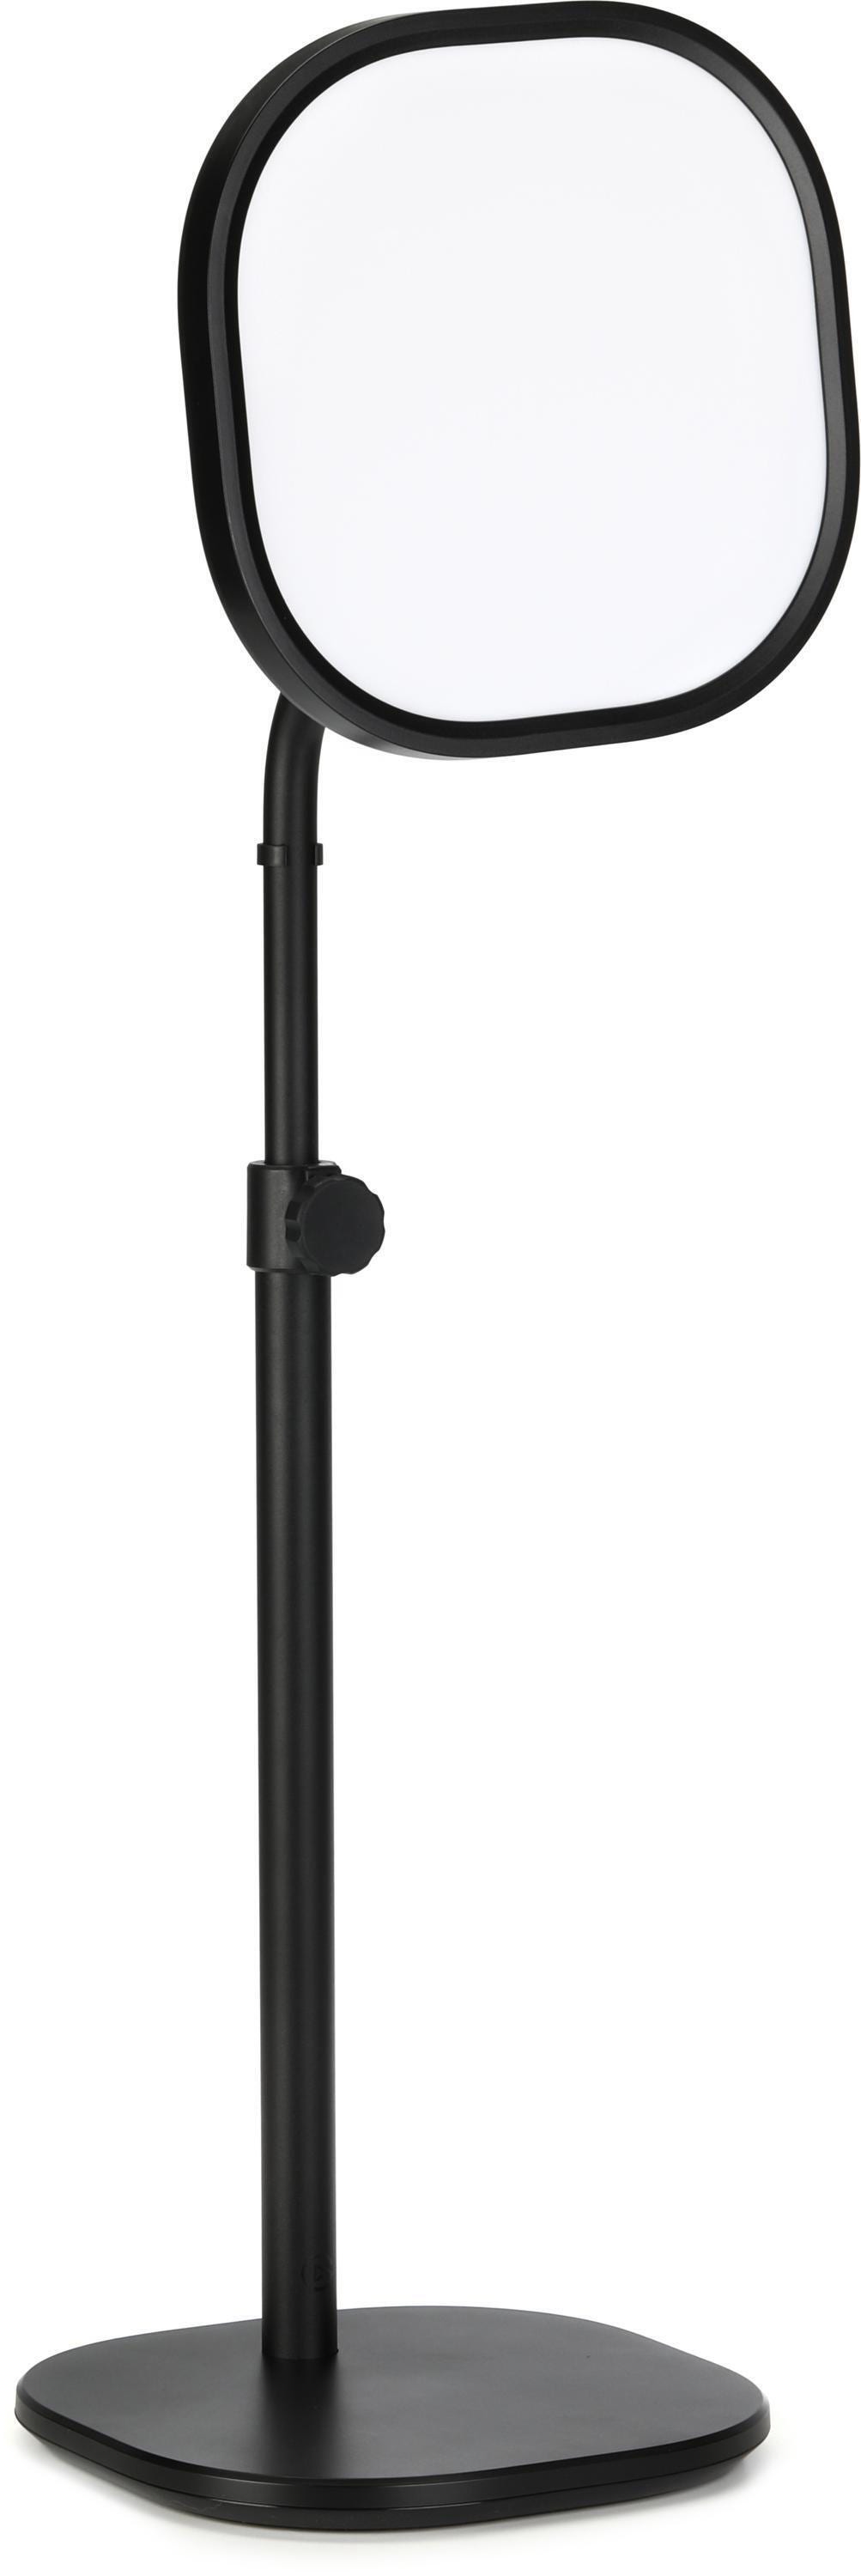 Elgato Key Light Mini: Portable LED panel presented